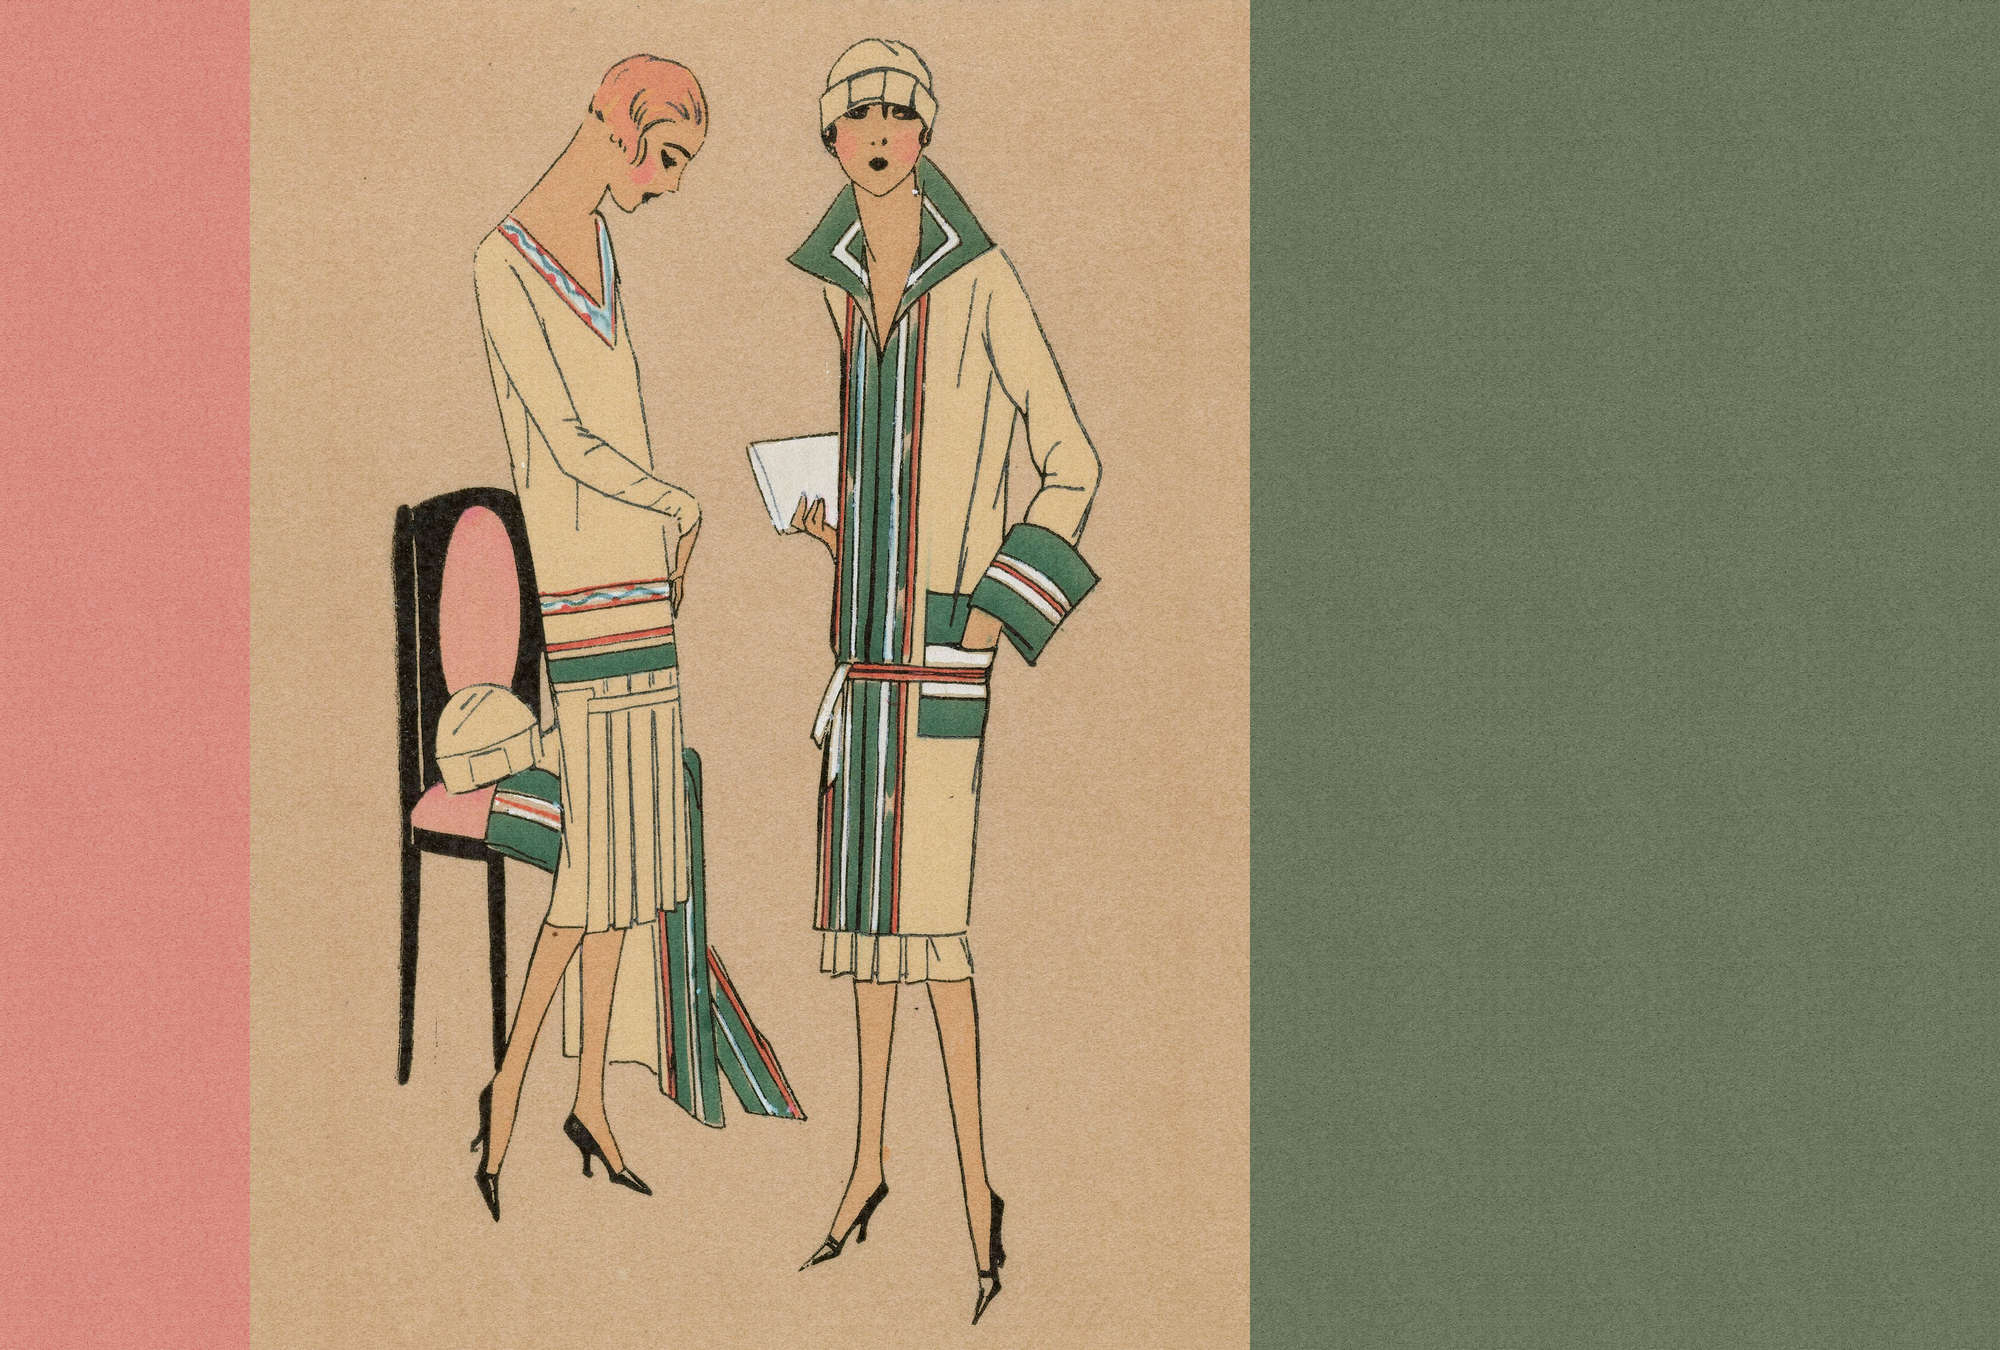             Parisienne 1 - papier peint art vestimentaire Twentiers Style
        